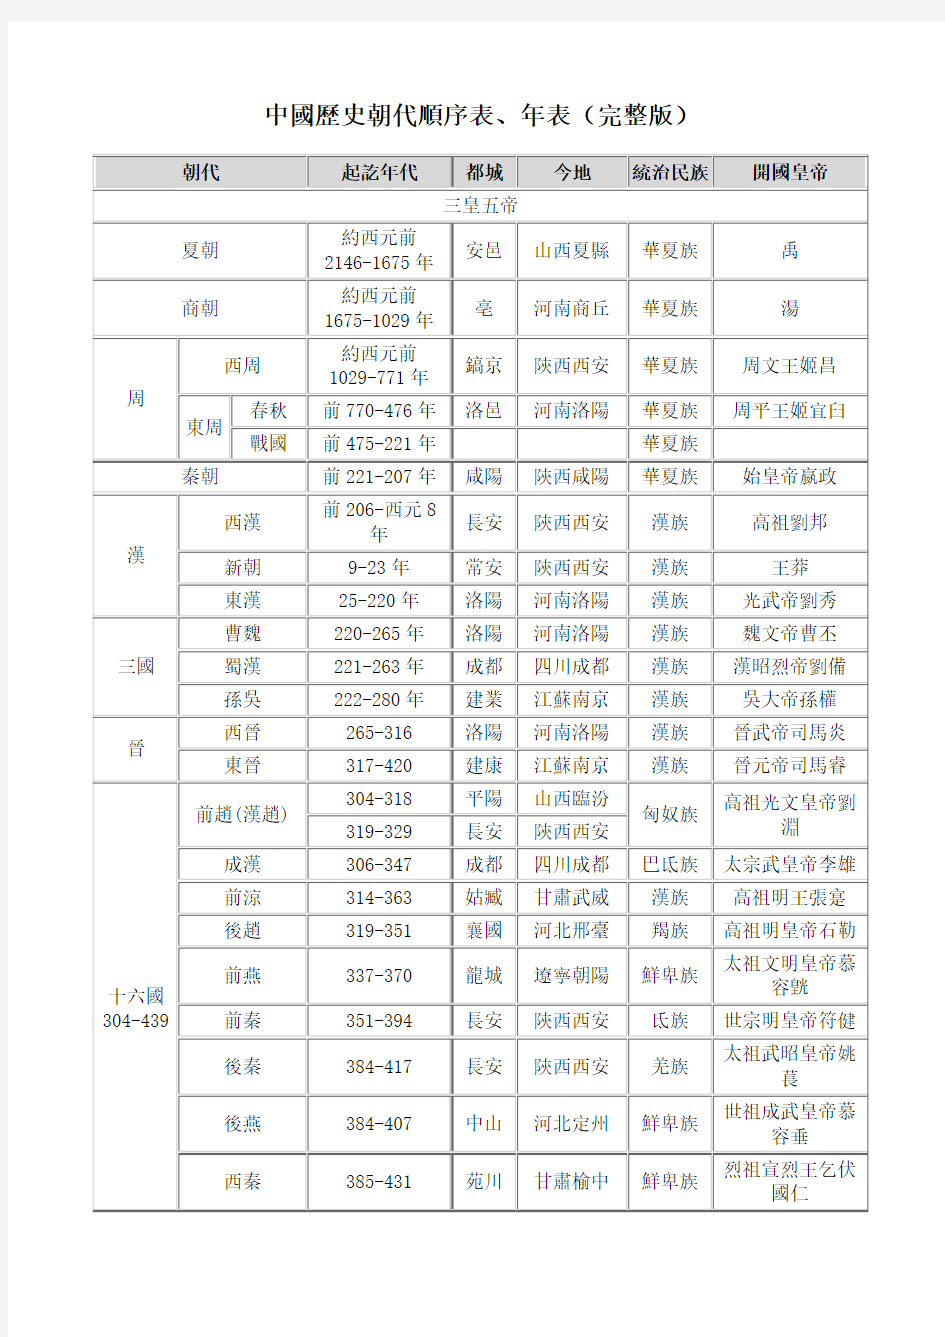 中国历史朝代顺序表、年表(完整版)-繁体-打印